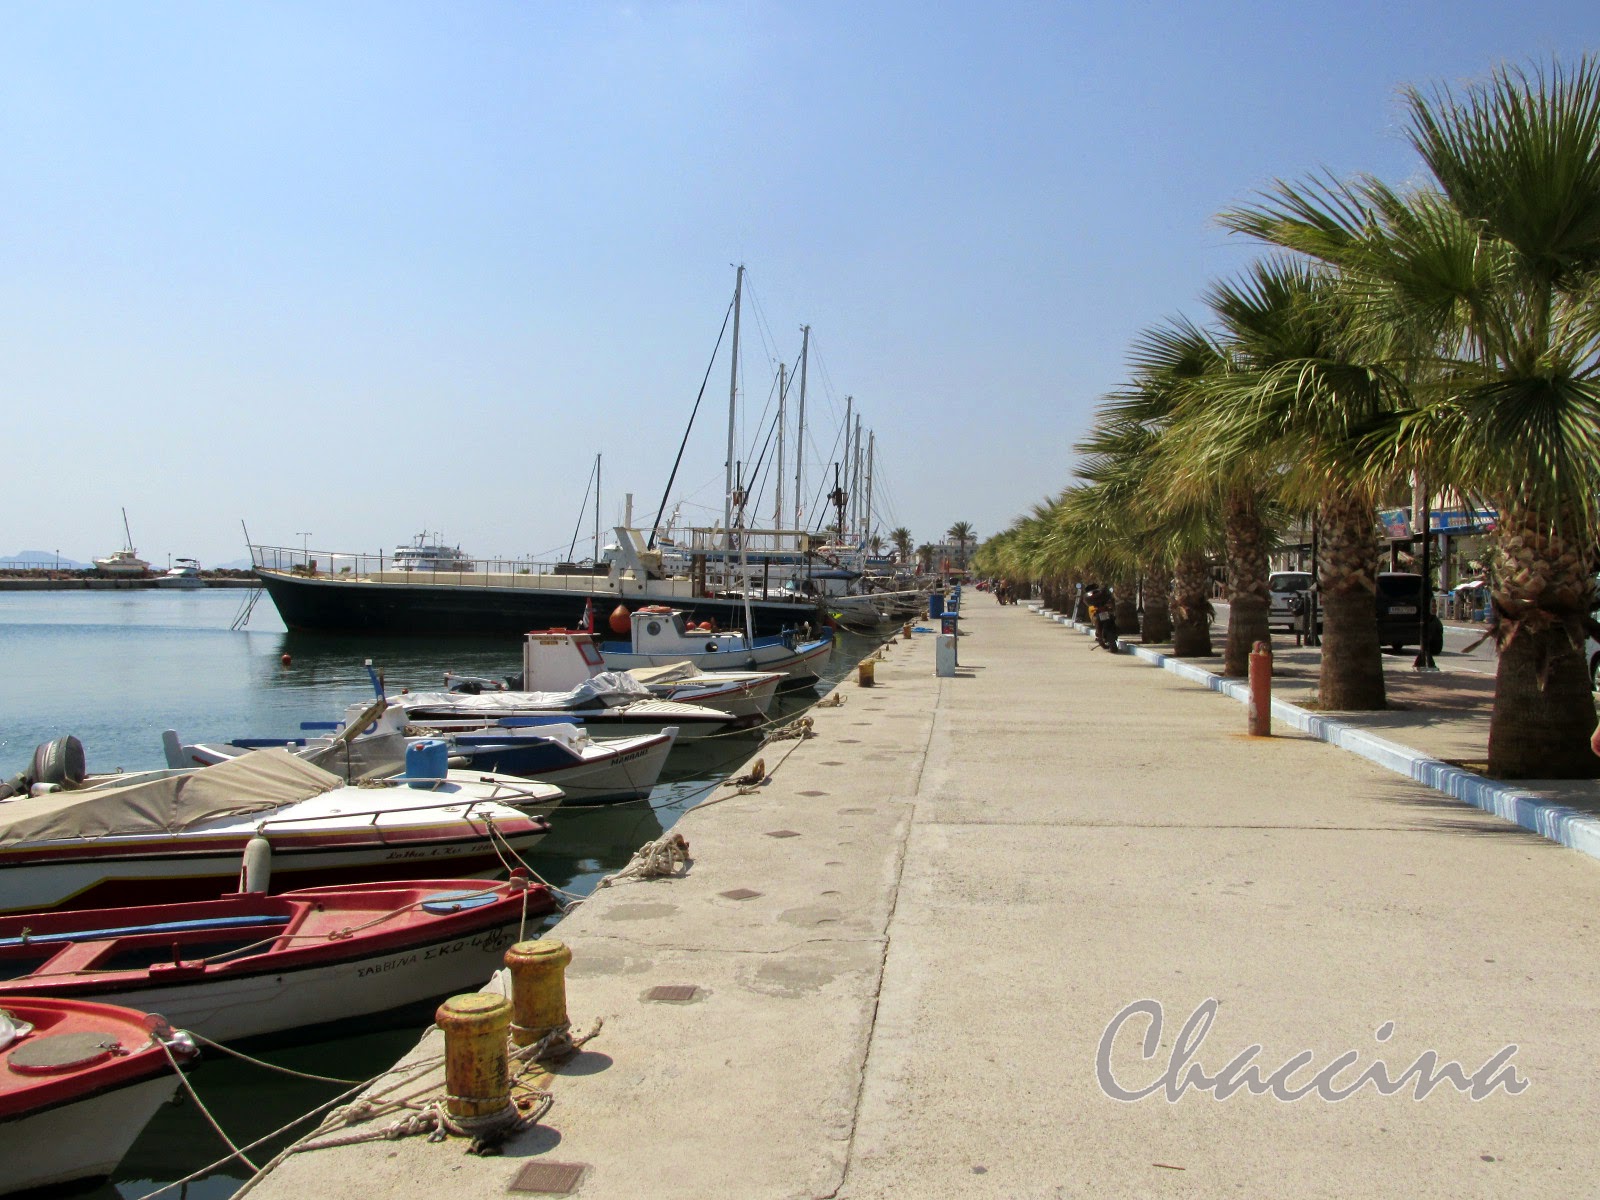 Der Hafen von Kardamena / Chaccina Lifestyleblog